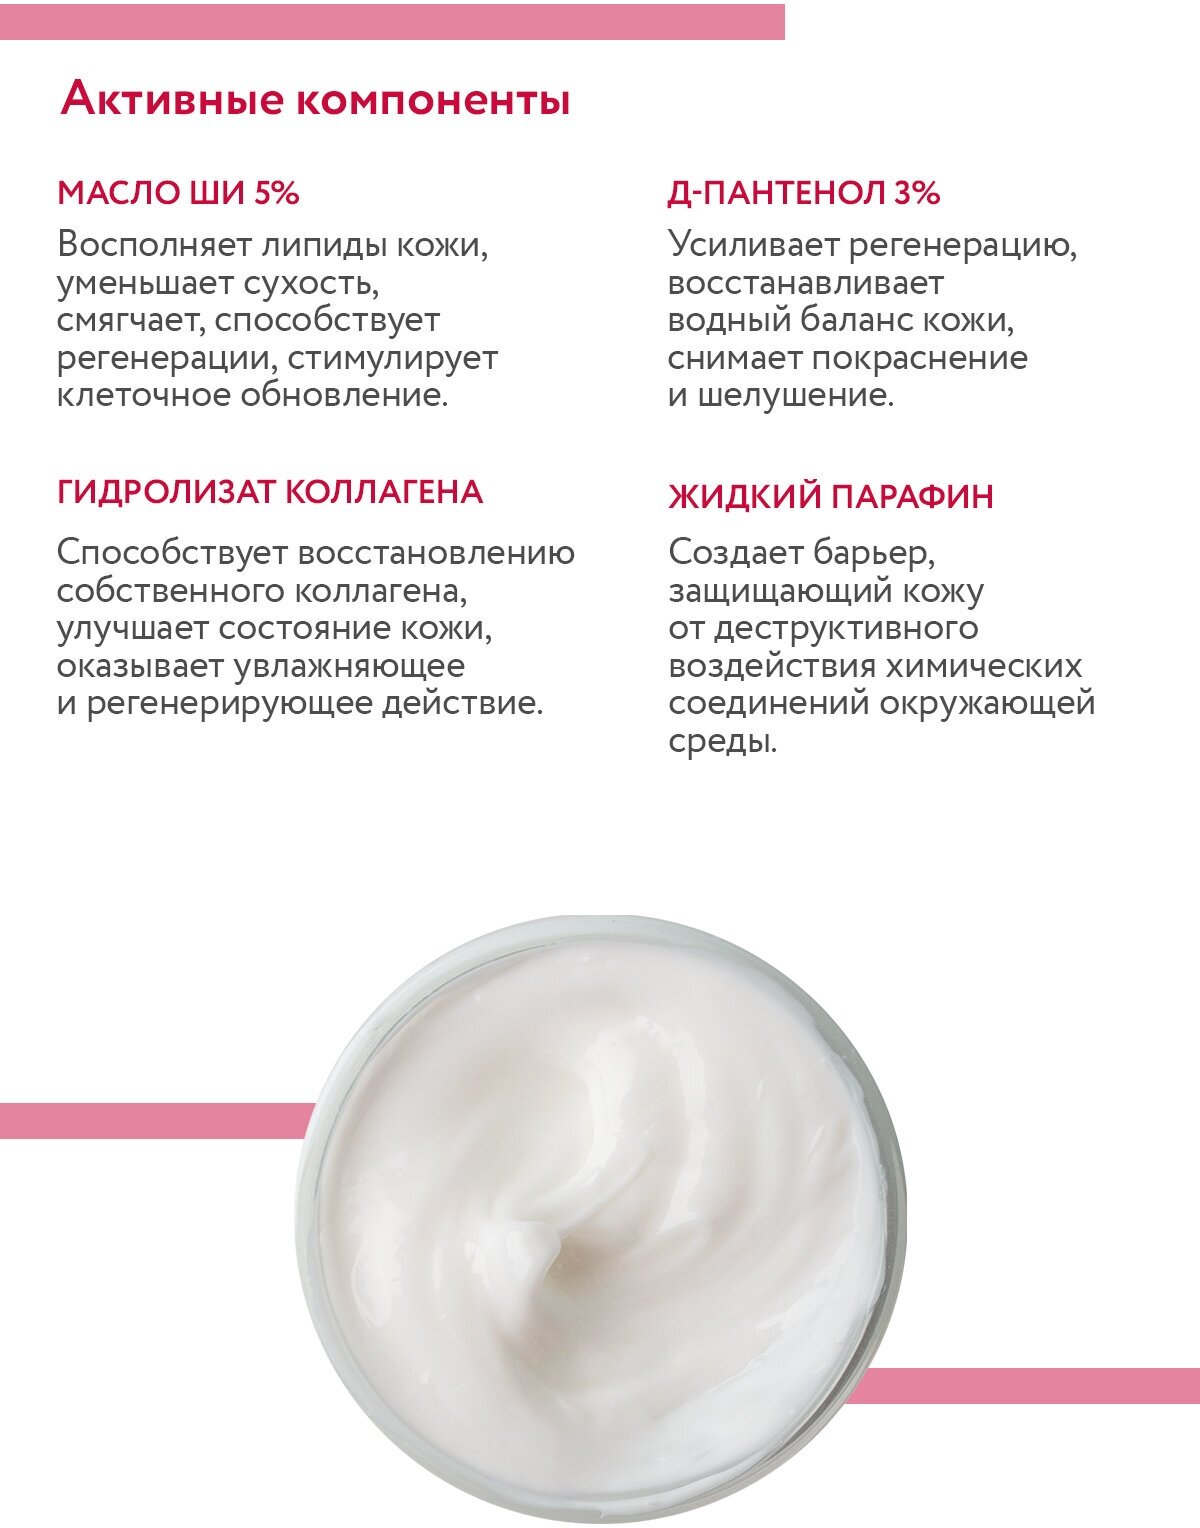 ARAVIA Липо-крем для рук и ногтей восстанавливающий Lipid Restore Cream с маслом ши и д-пантенолом, 100 мл